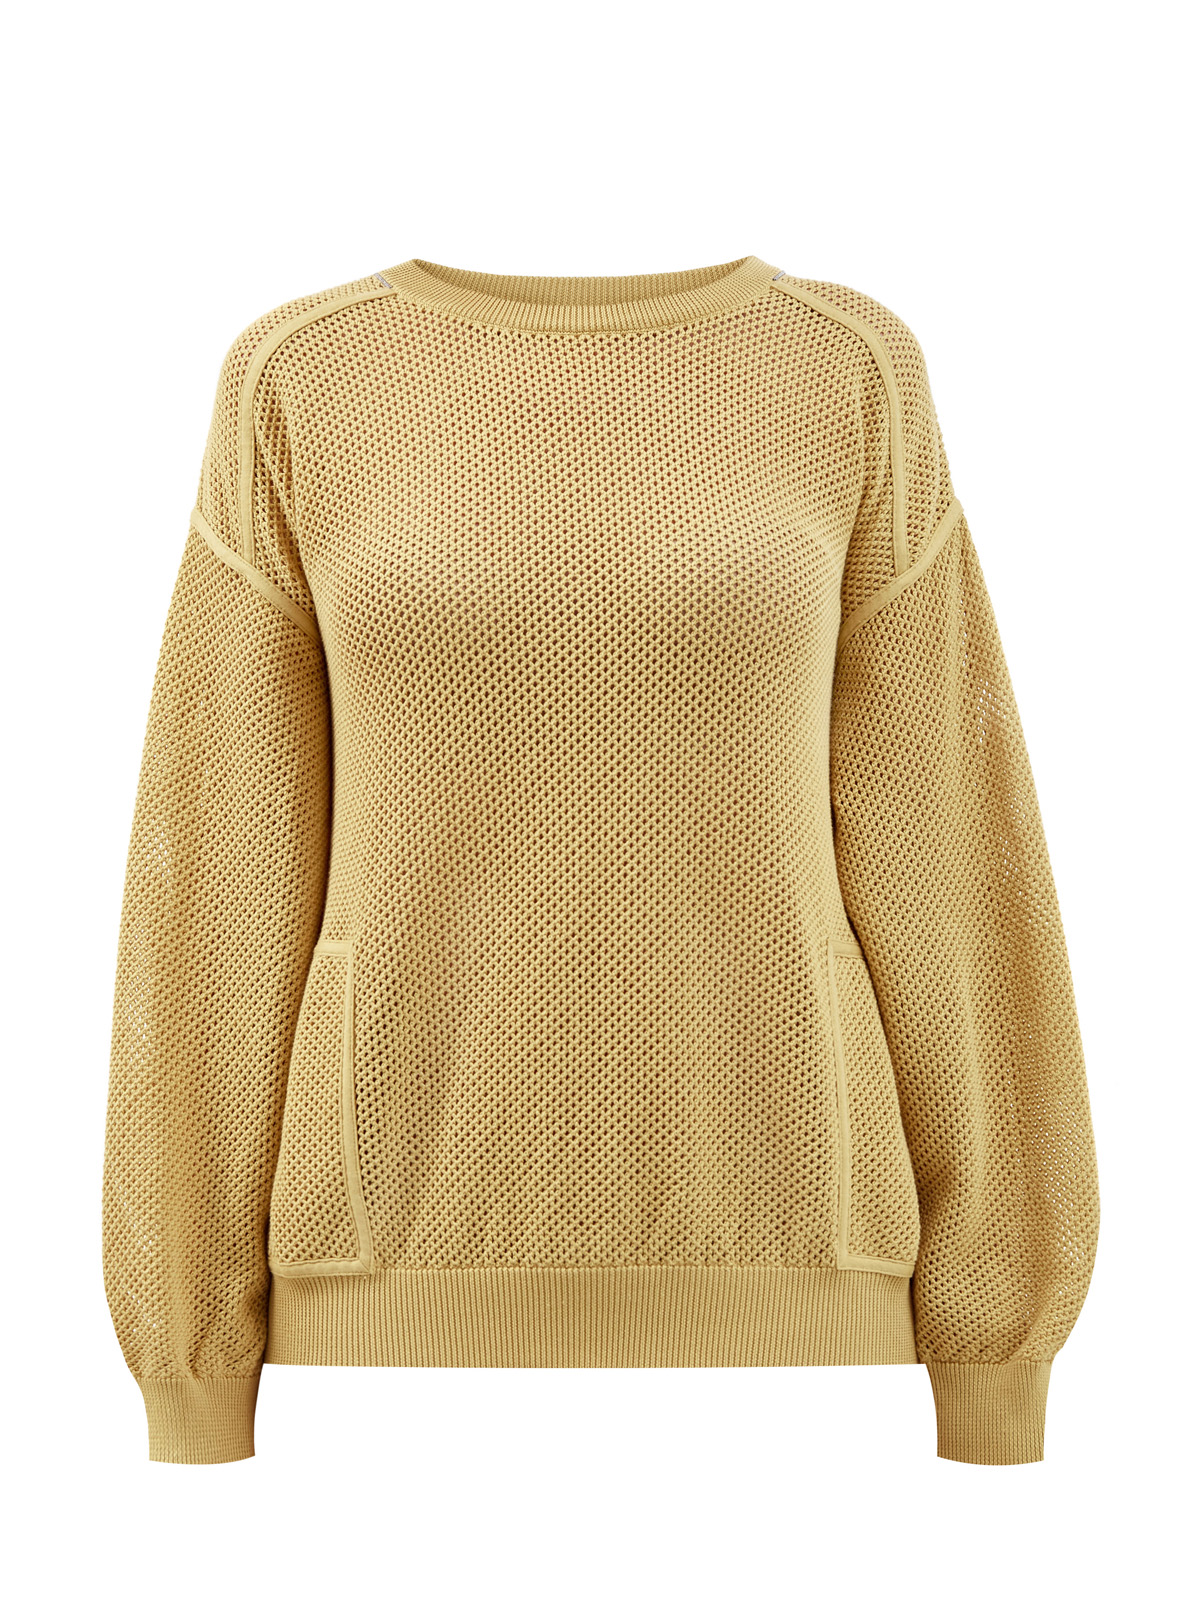 Пуловер из хлопковой пряжи узорной вязки с ювелирной цепочкой Мониль BRUNELLO CUCINELLI, цвет желтый, размер 44;42 - фото 1